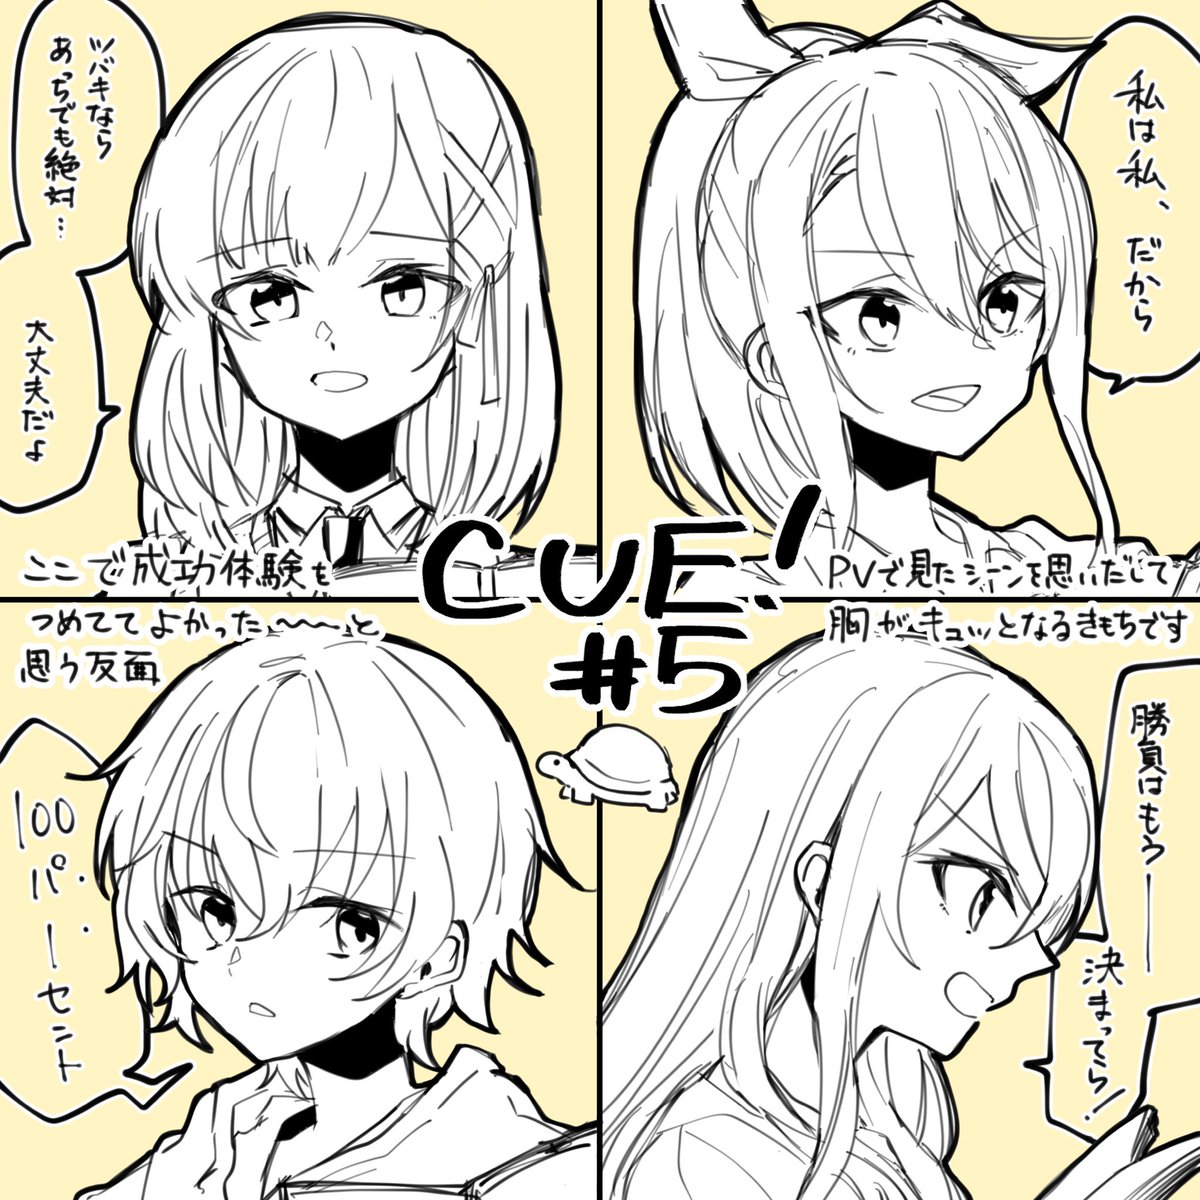 キューくん5話くん゛…
#キュー #cue_anime 